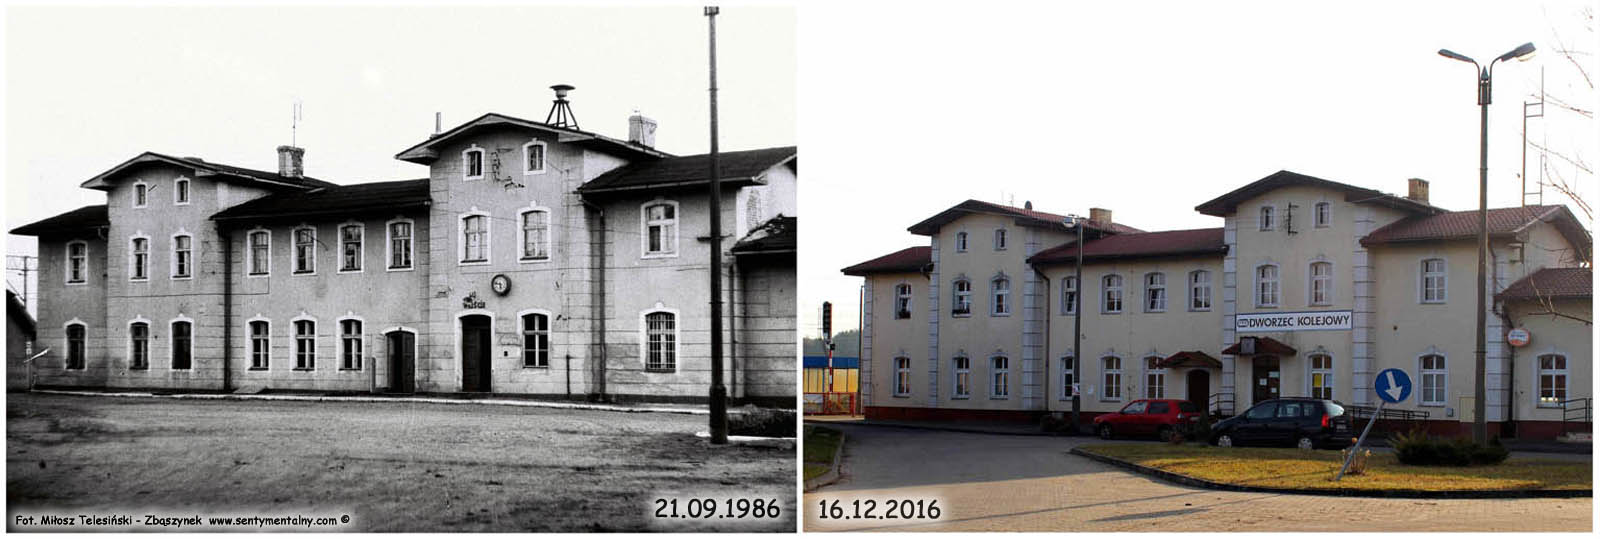 Dworzec w Toporowie w latach 1986 i 2016 – porównanie po 30 latach. Stację Toporów oddano w 1882 roku. Od 1909 roku, to jest, z chwilą wybudowania połączenia do Międzyrzecza (01.08.1909) o długości 42.08 km., budynek dworcowy został rozbudowany w stronę wschodnią.